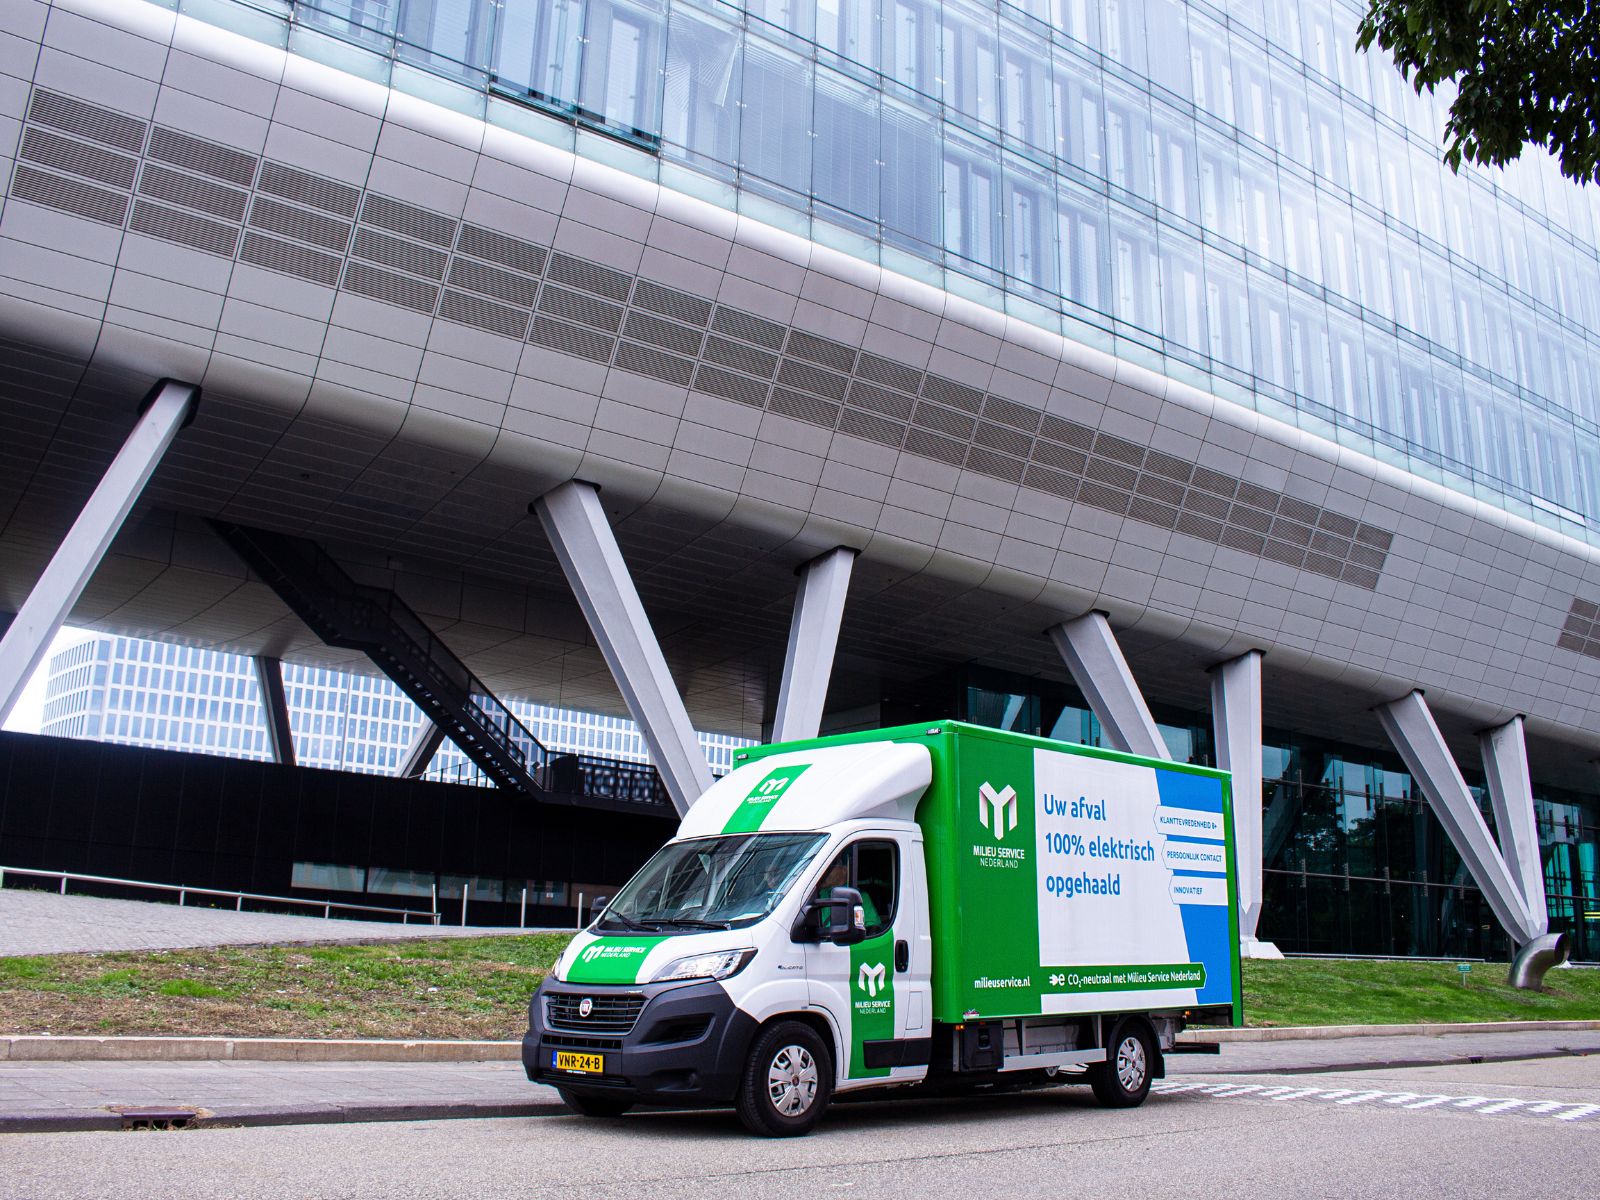 Vrachtwagen van Milieuservice Nederland rijdt op de weg